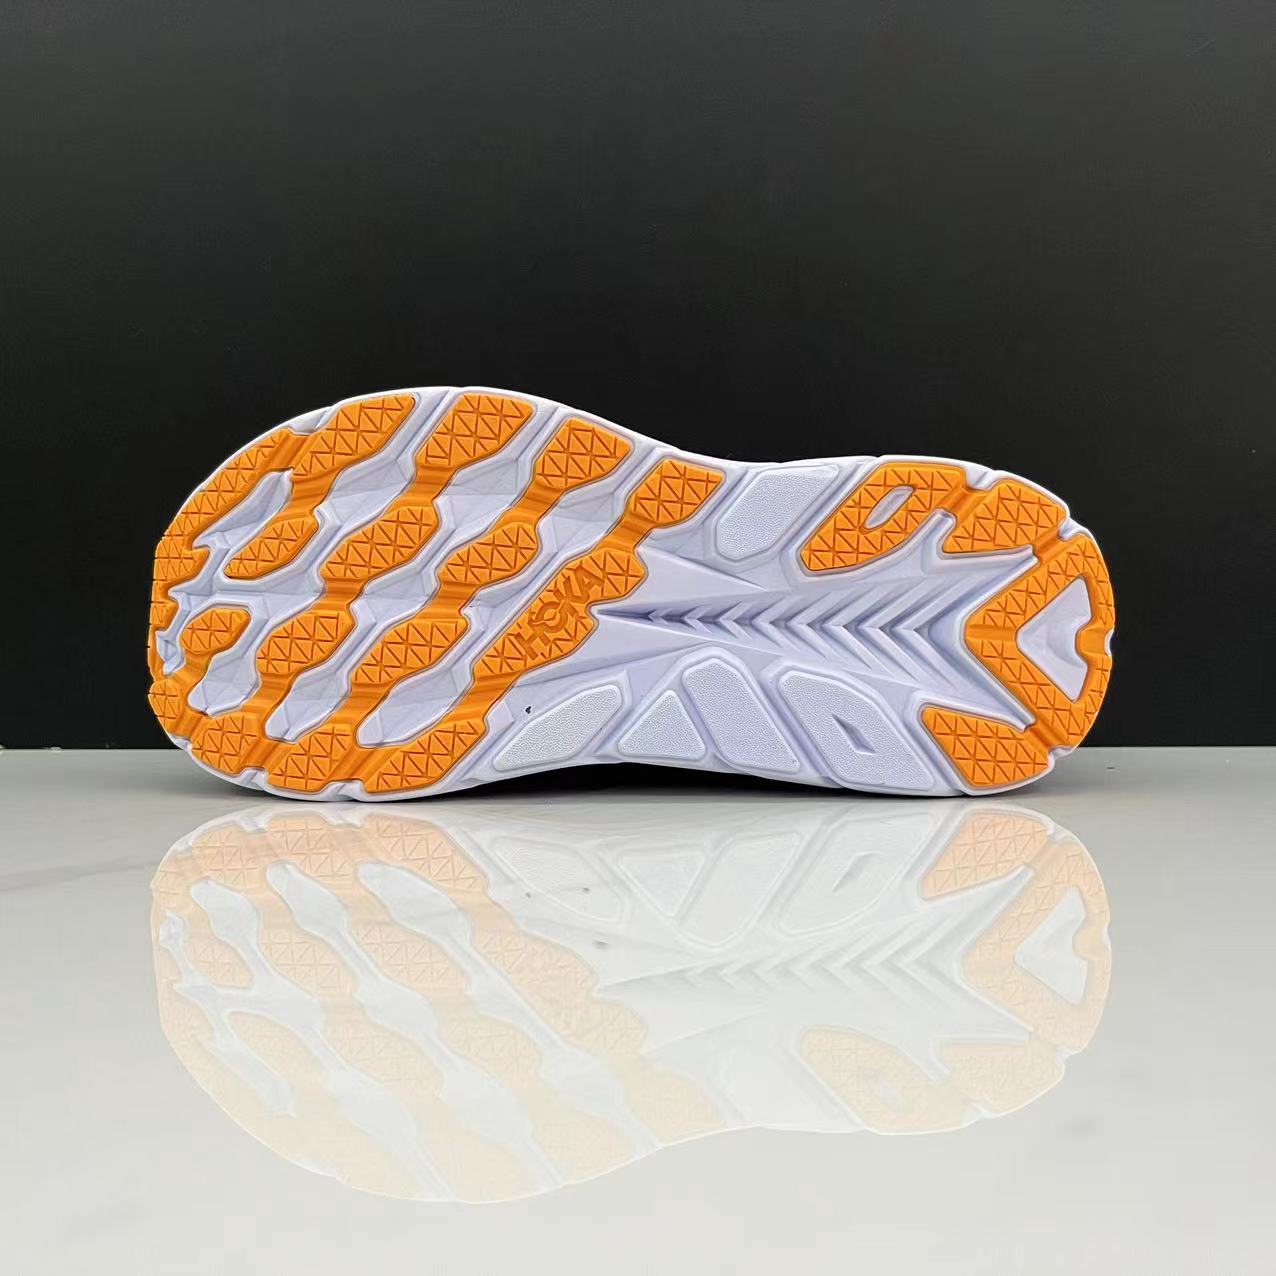  Sport Running Blue Fog Orange Breathable Anti Slip Men Women Lifestyle Outdoor Sneaker soles